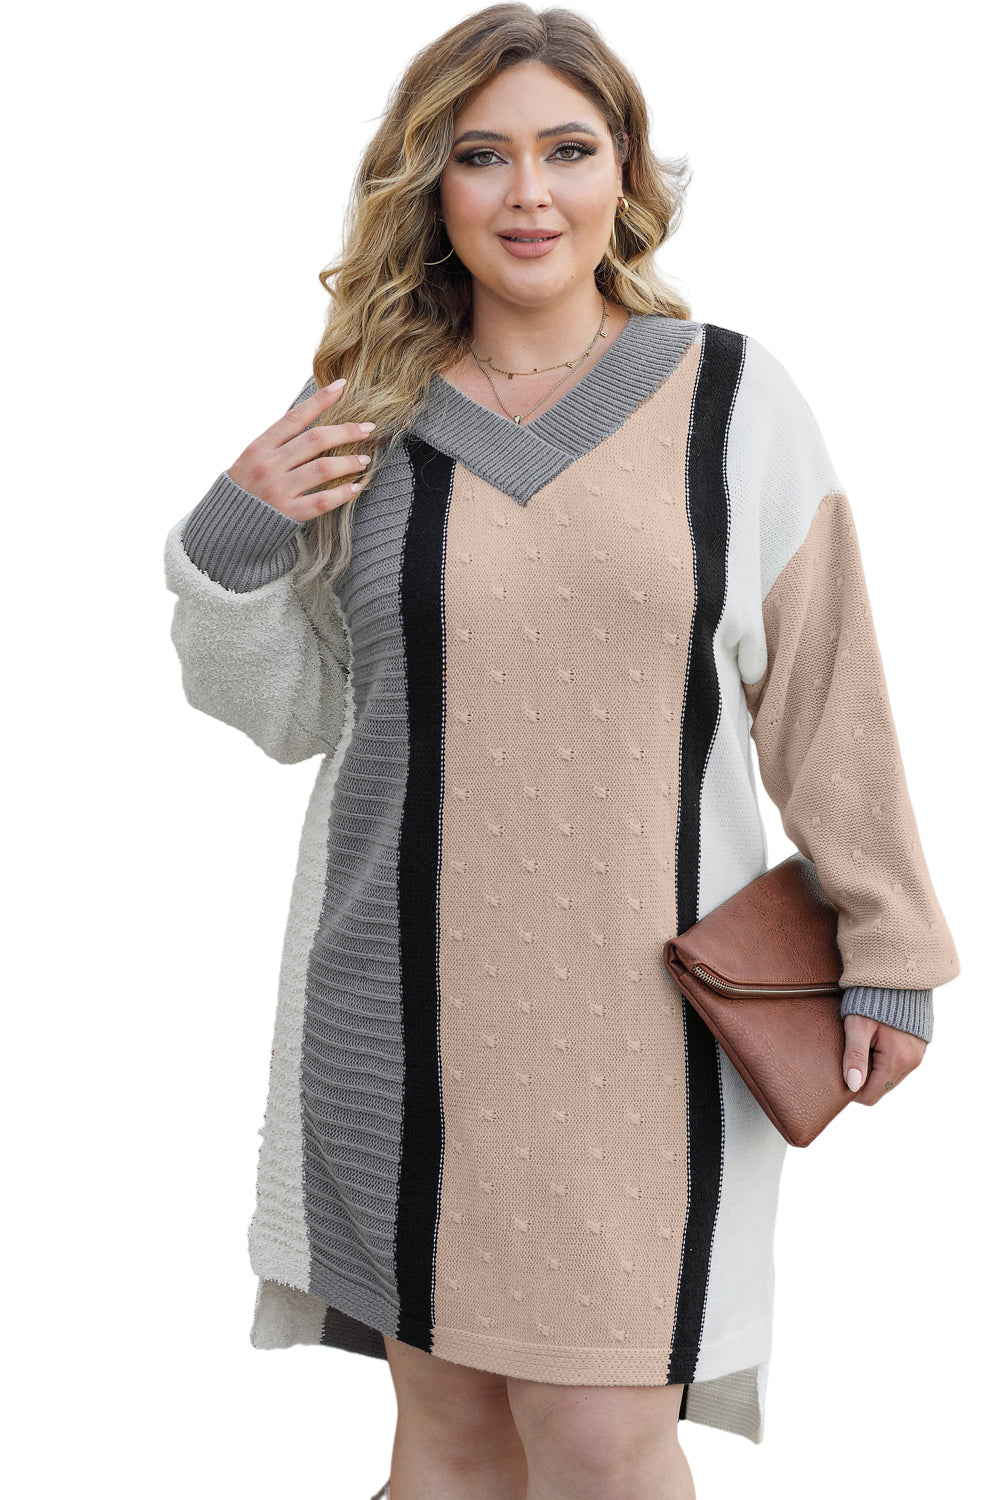 Haljina džemper veće veličine u boji kajsije